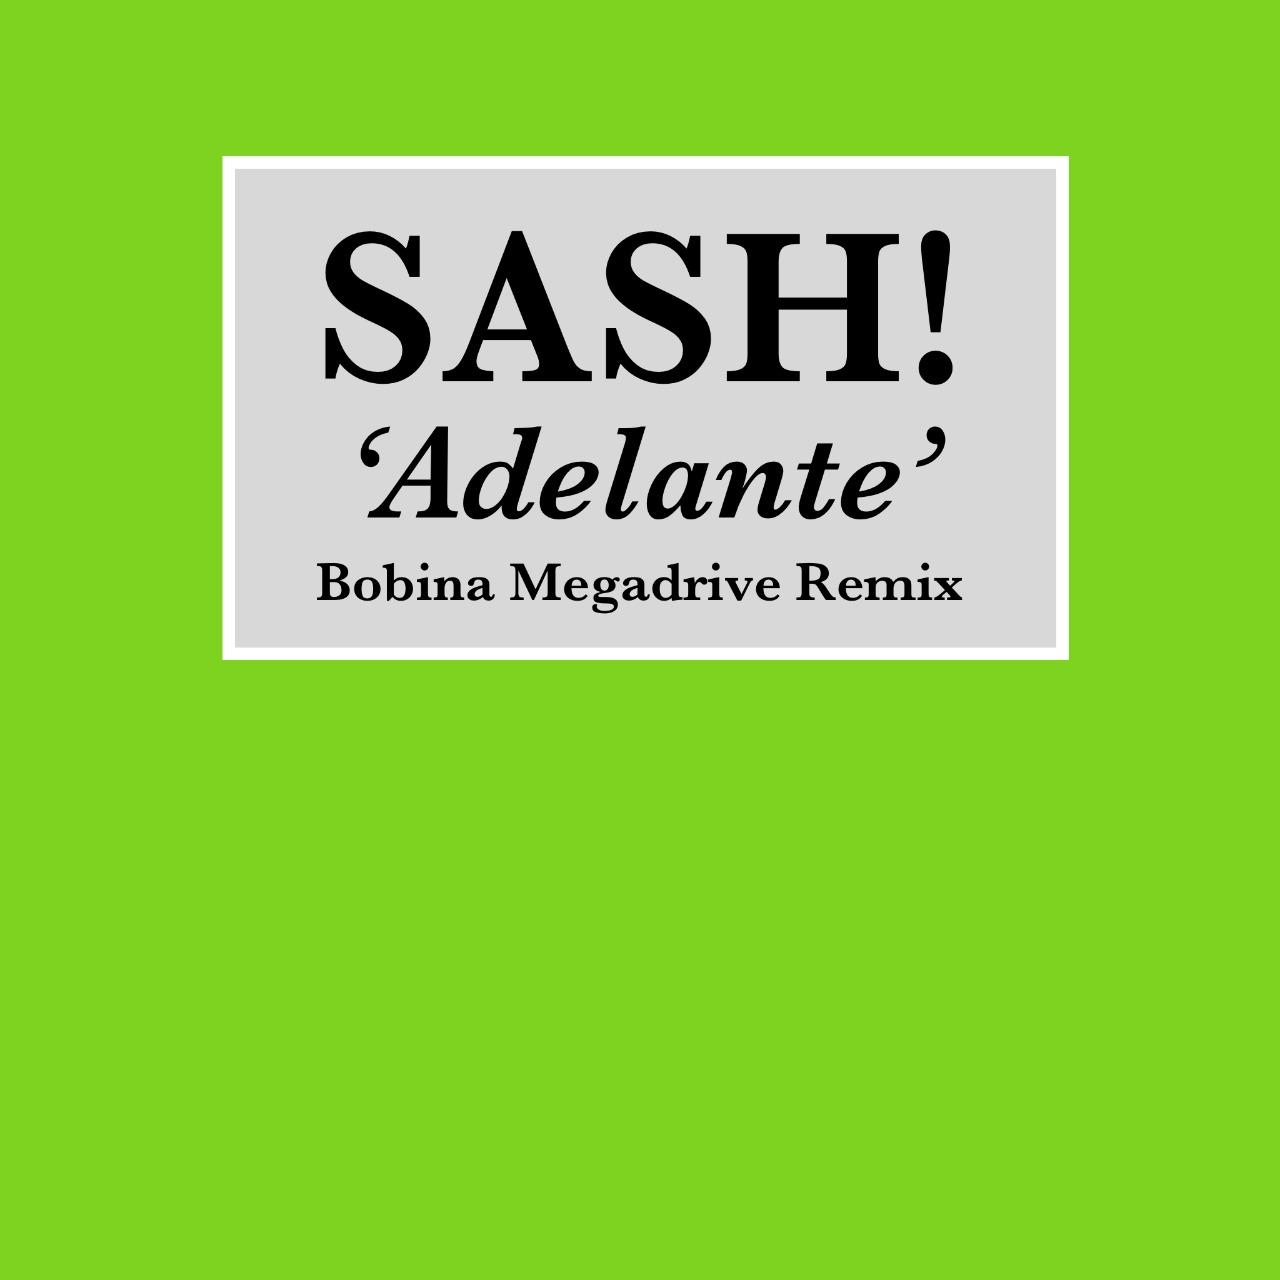 ഡൗൺലോഡ് Sash! - Adelante (Bobina Megadrive Remix)